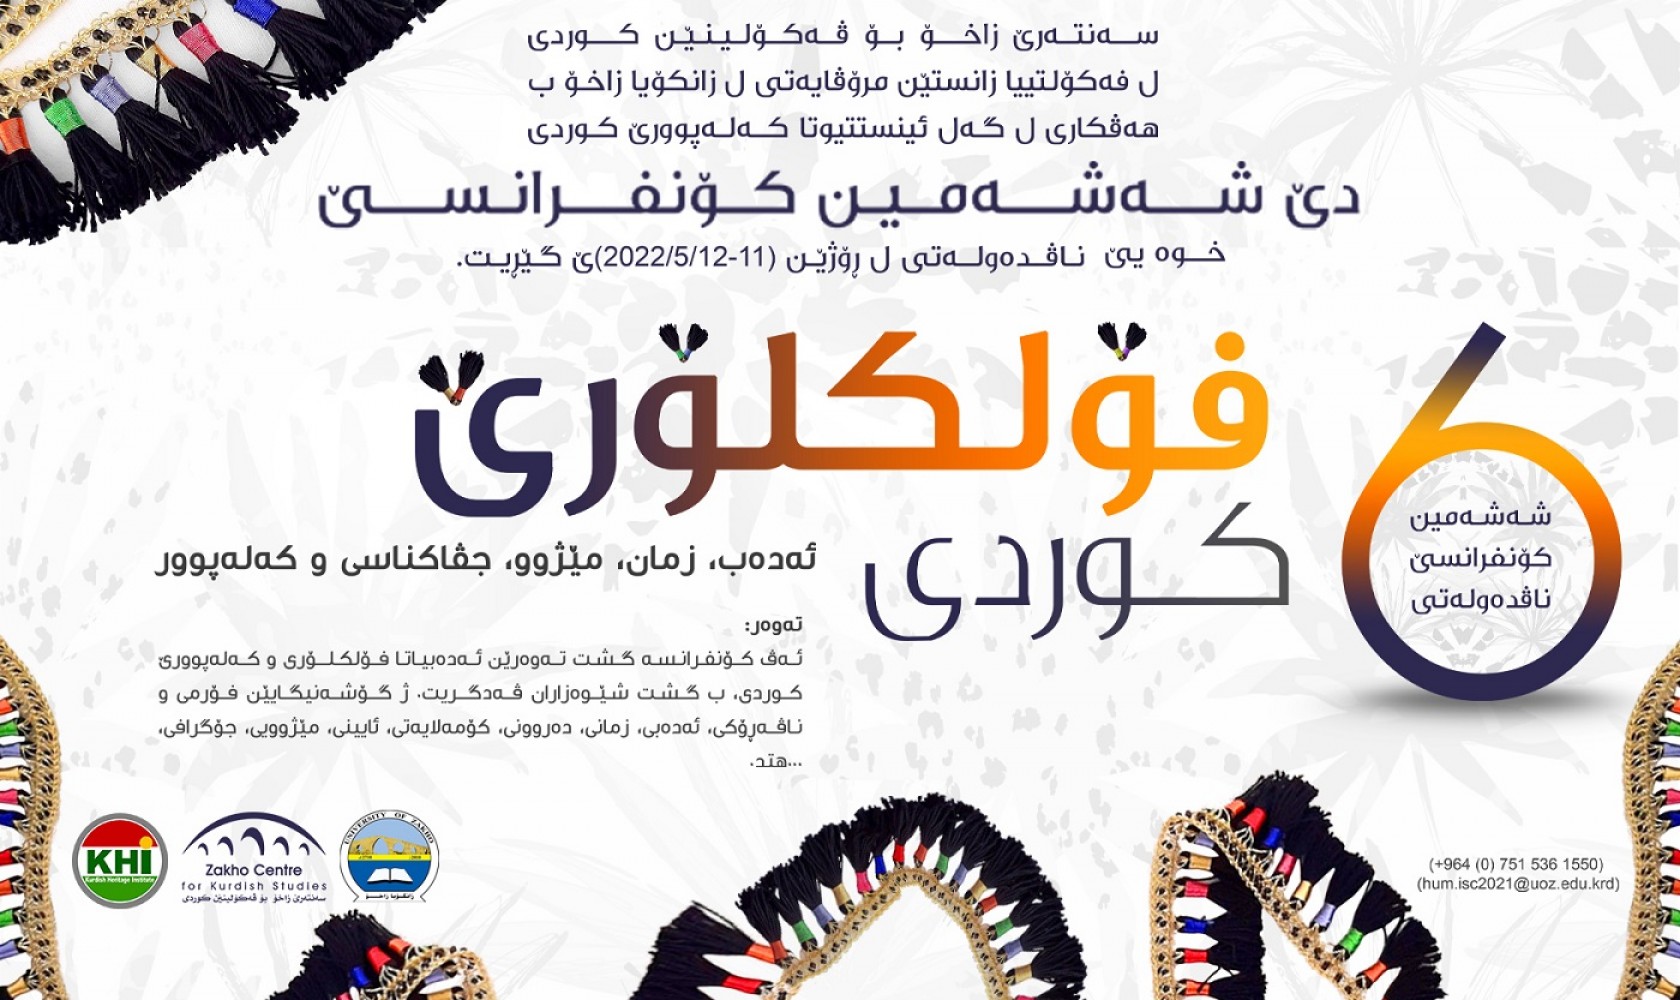 6th International Conference - Zakho Center For Kurdish Studies, 05-11-2022